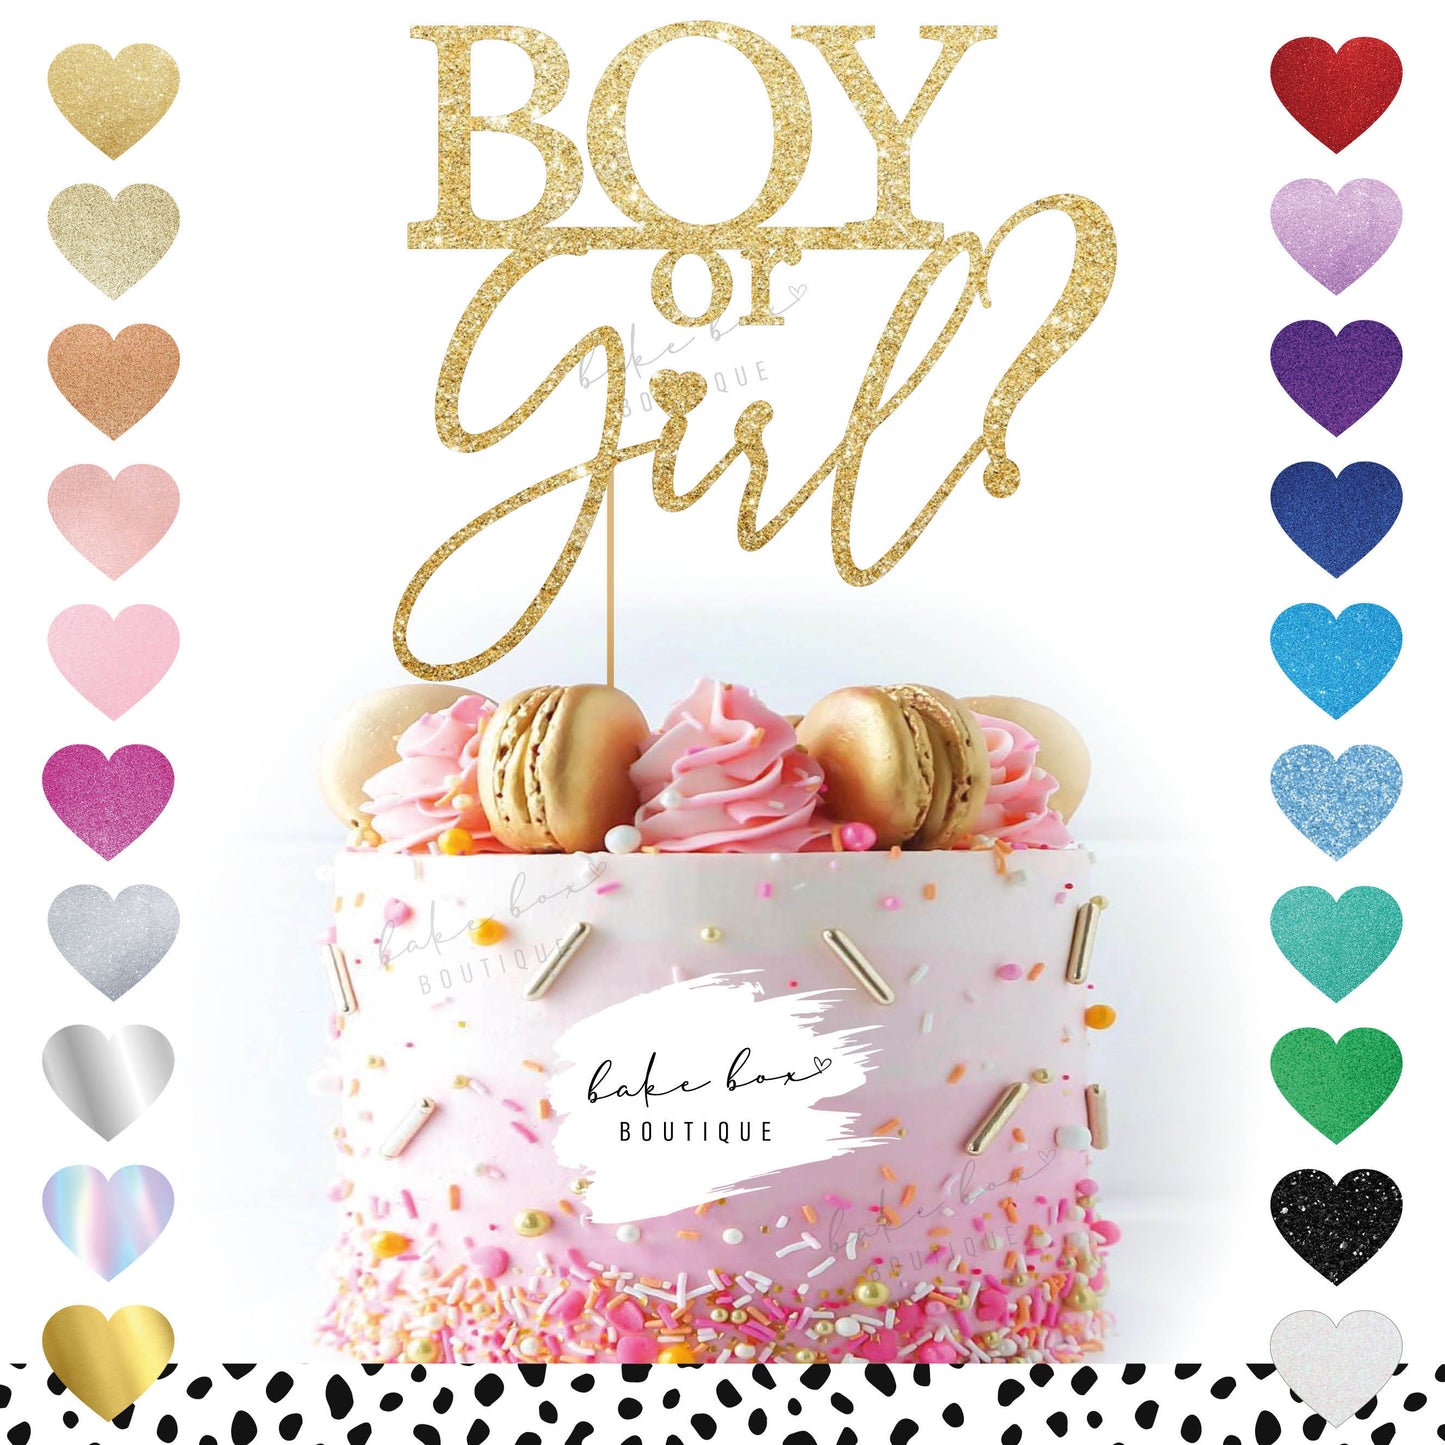 BOY OR GIRL? - CAKE TOPPER